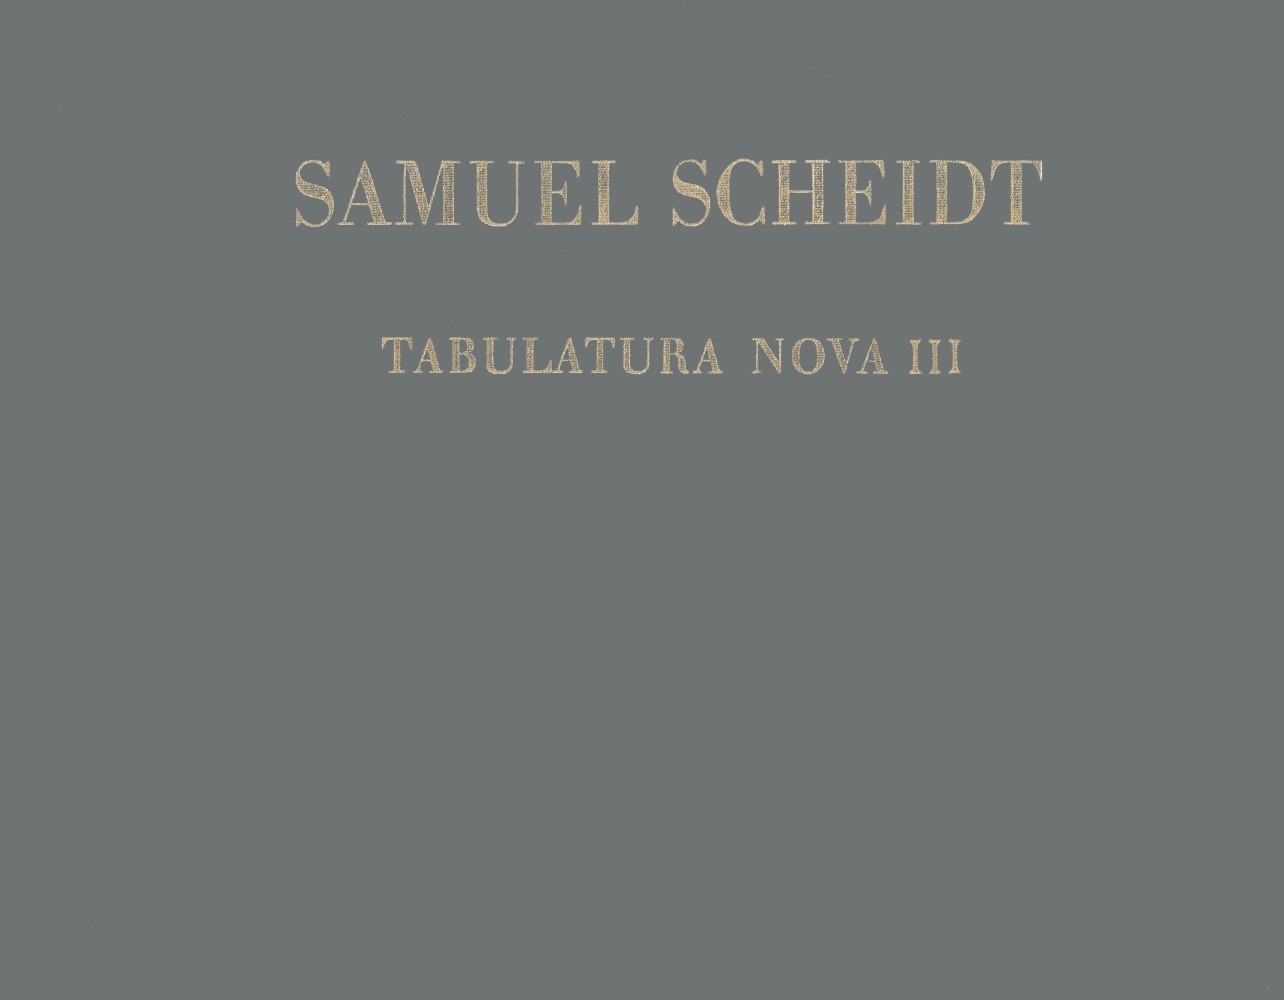 Tabulatura Novalto, Teil III (SCHEIDT SAMUEL)